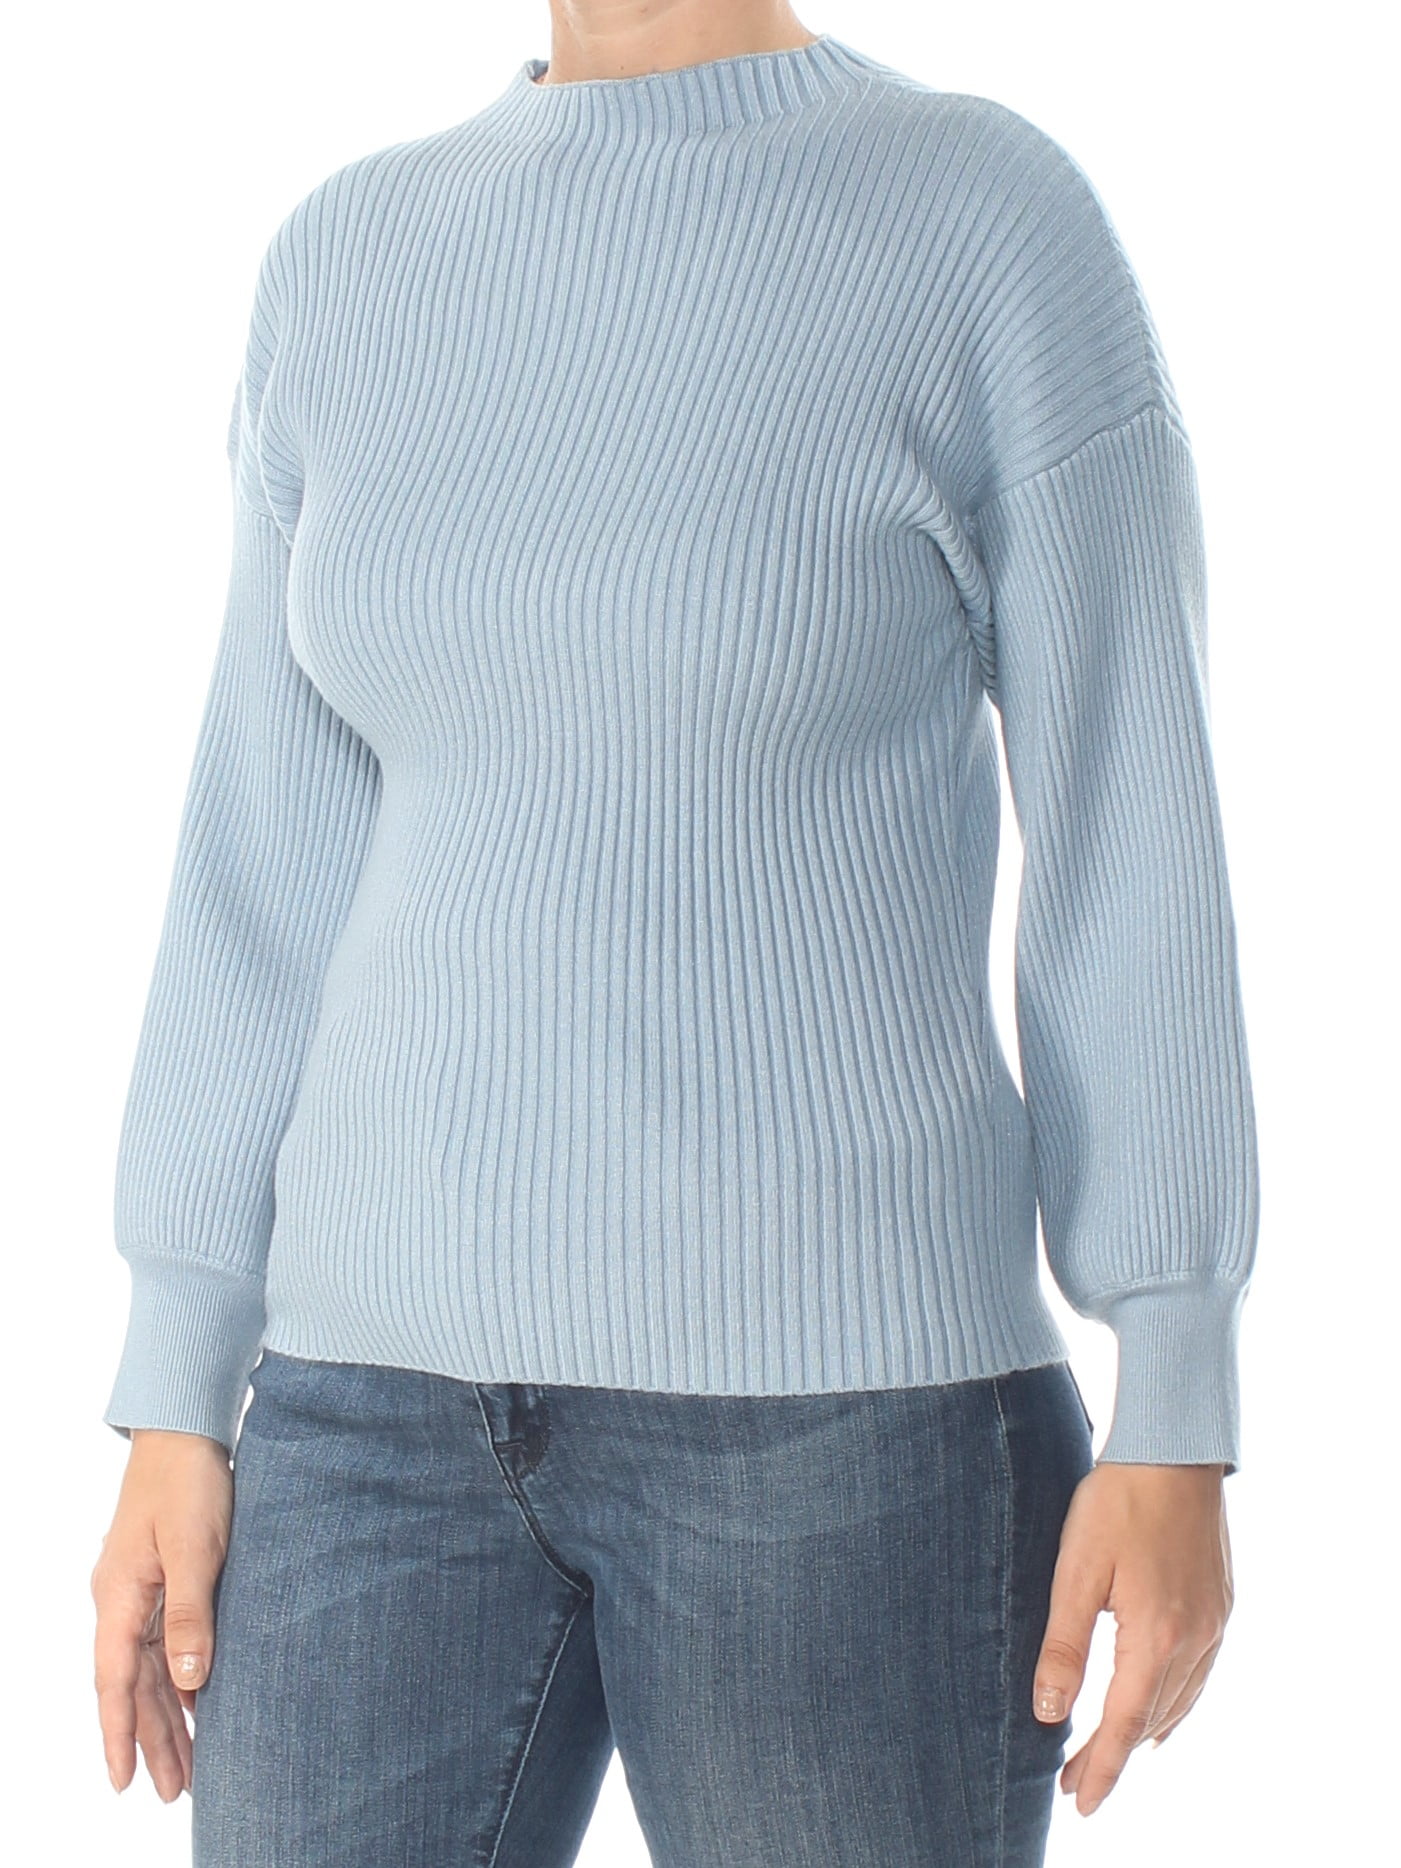 Inc Womens Blue Mock Turtleneck Long Sleeve Sweater Size L